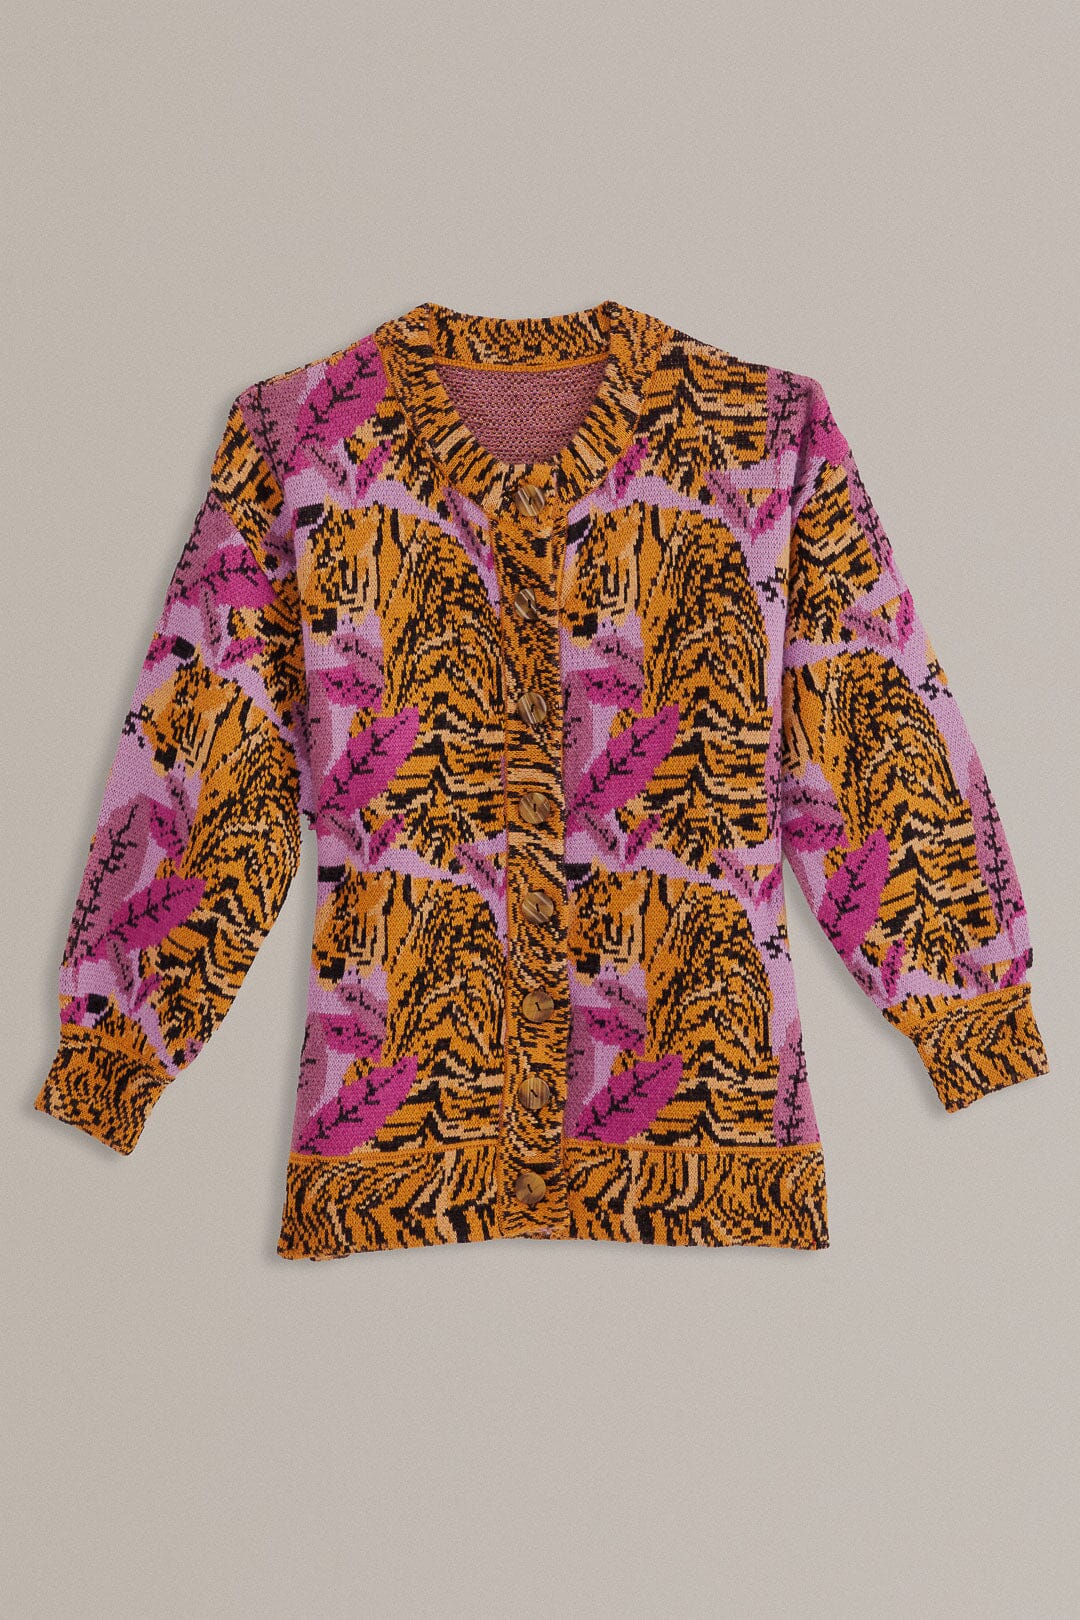 Lavender Tiger Leaves Knit Cardigan